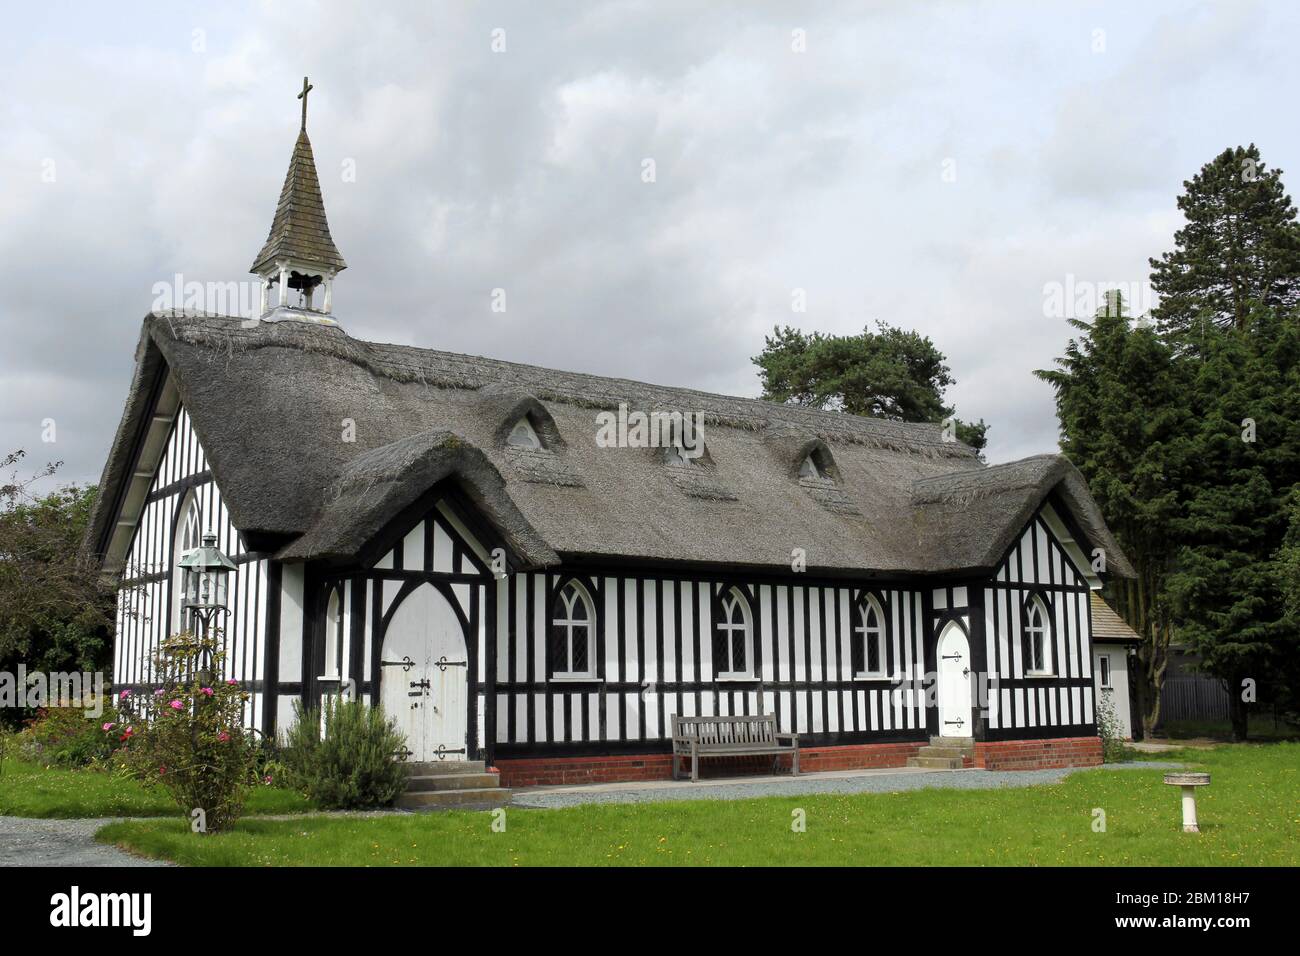 All Saints Church, Little Stretton, Shropshire, Royaume-Uni. Un bâtiment à colombages construit en 1903 - inhabituel pour cette période et classé de grade II Banque D'Images